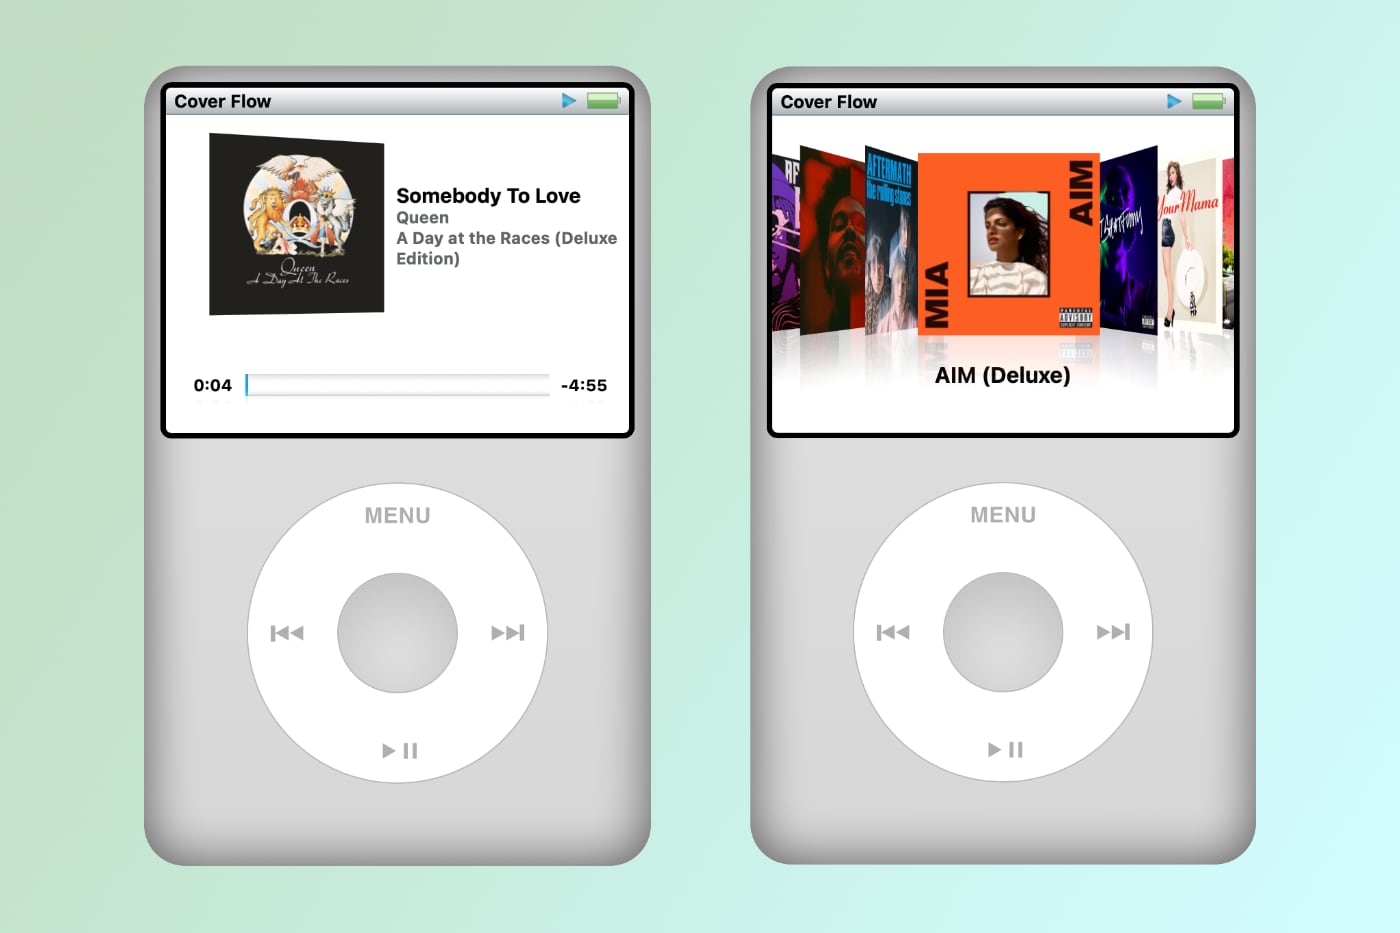 Теперь можно превратить Apple Music на айфоне в легендарный iPod Classic. Это легко и бесплатно